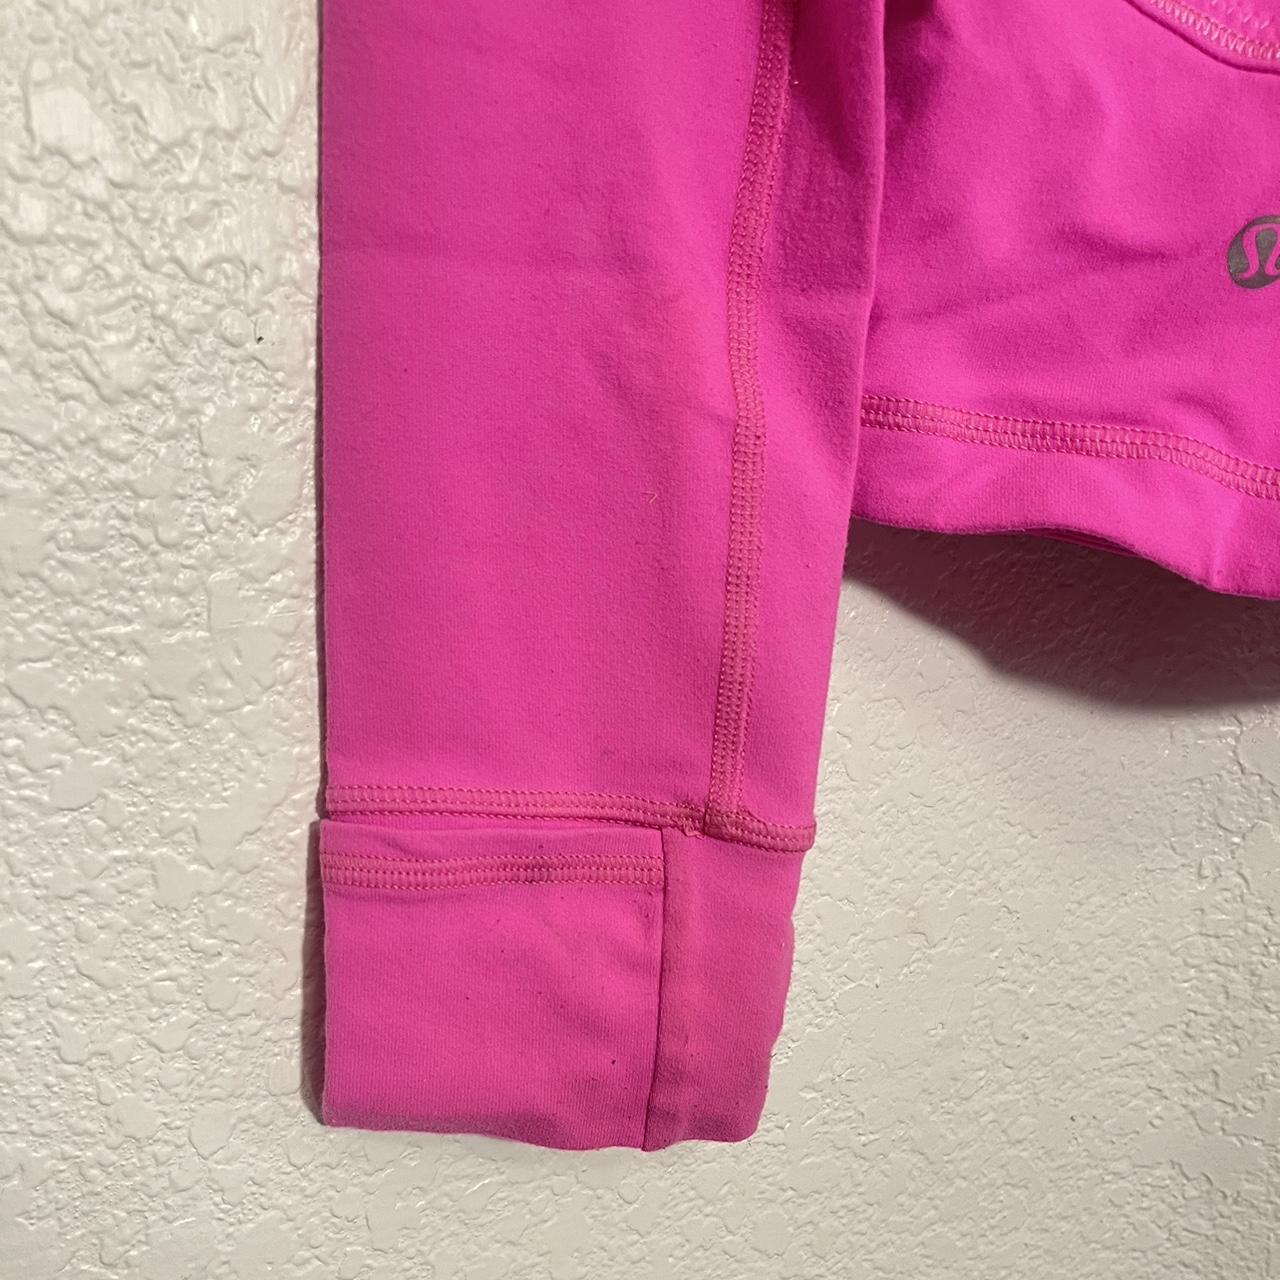 Lululemon Define Jacket in color sonic pink! Only... - Depop